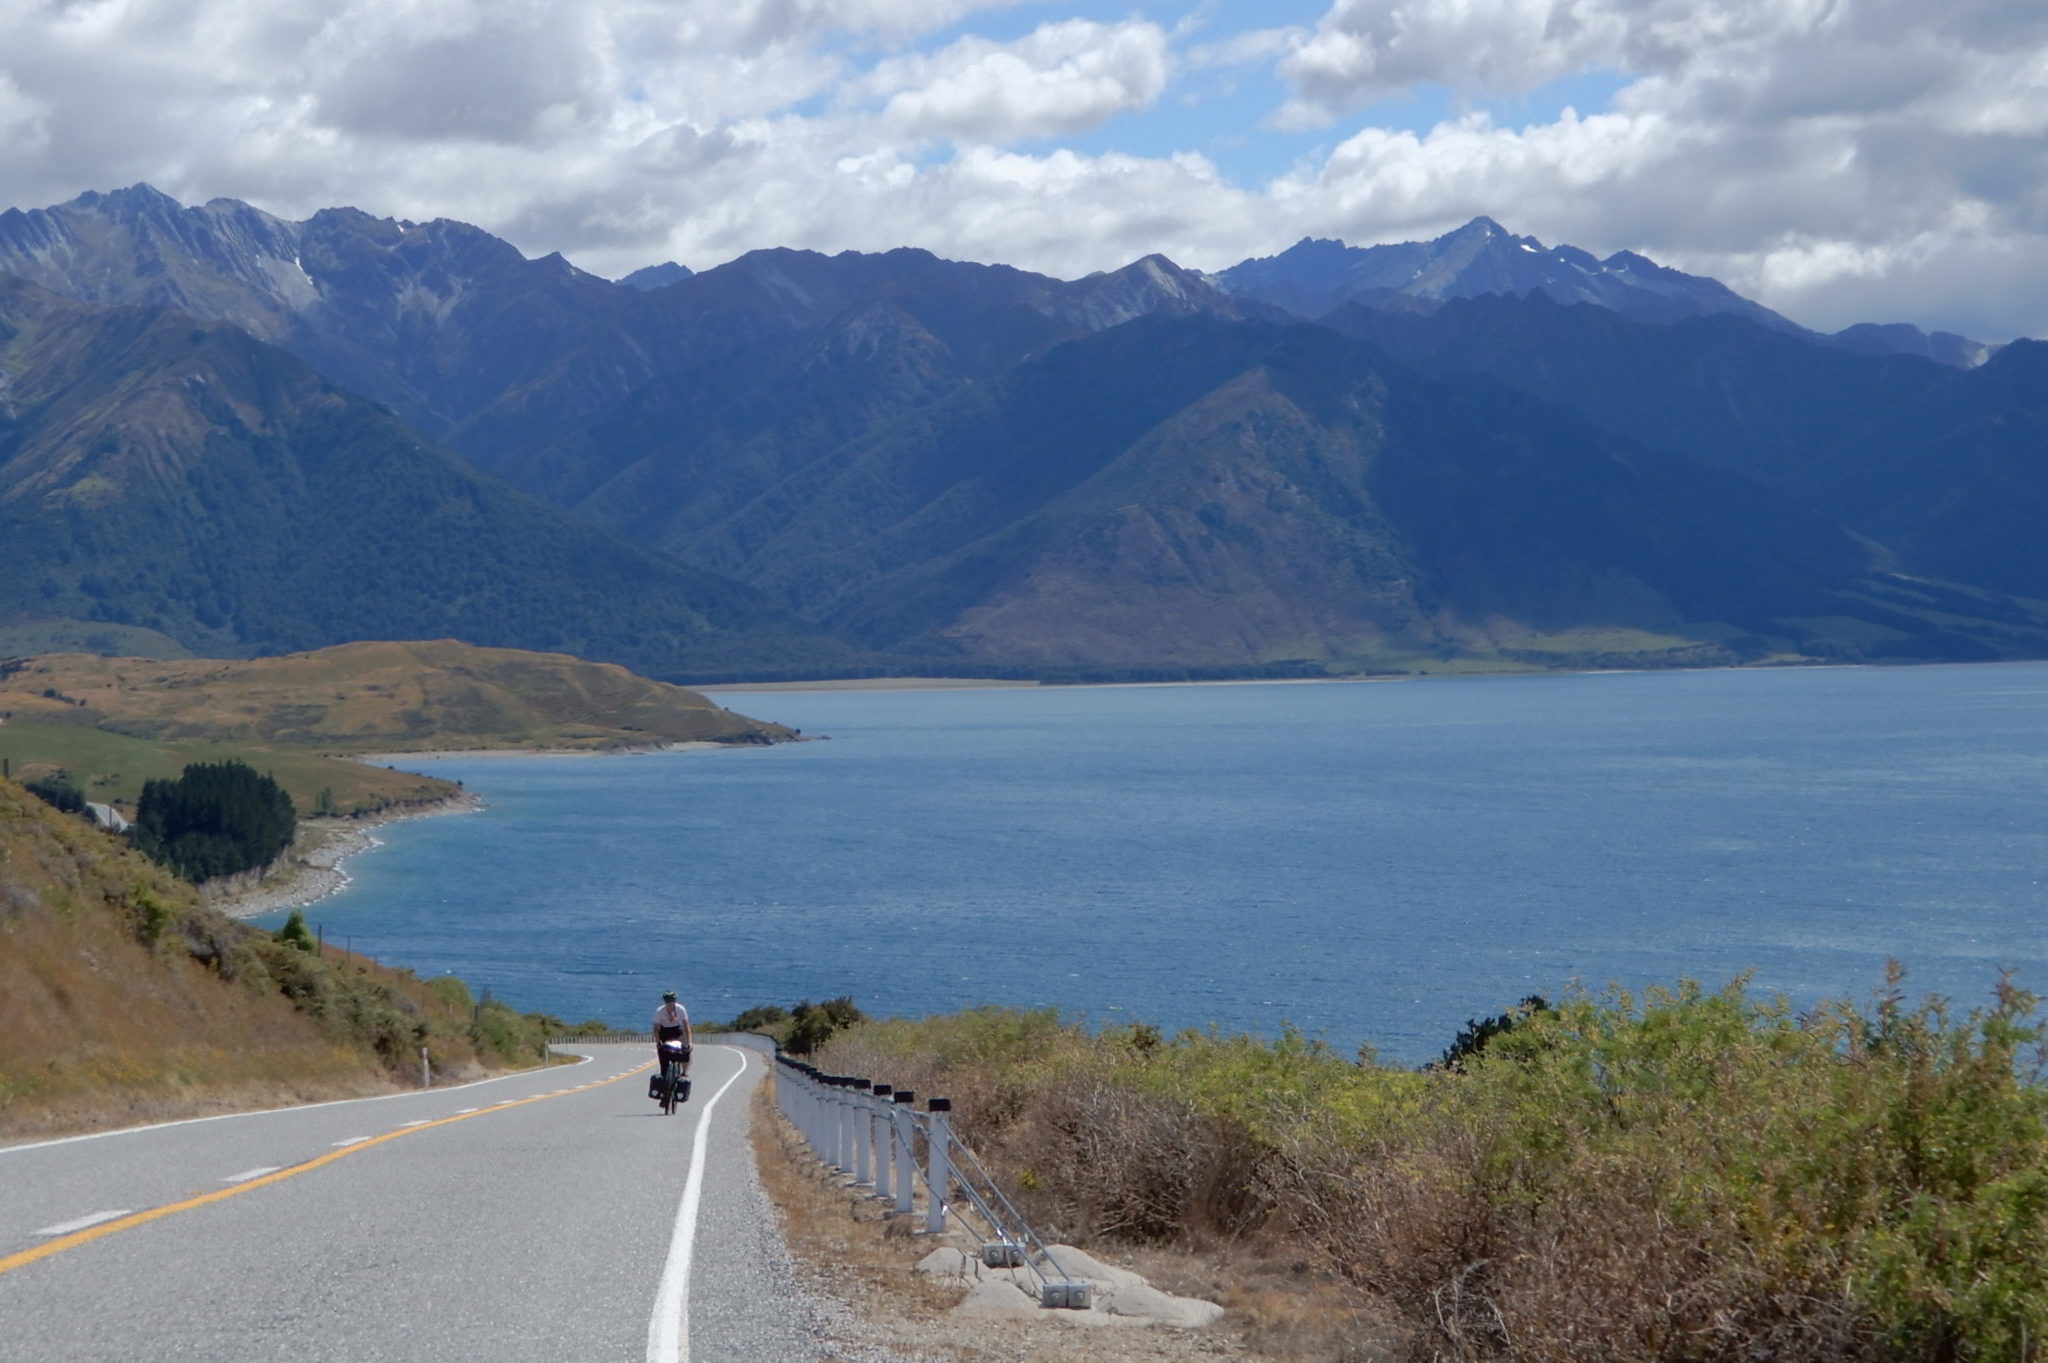 La traversée de la Nouvelle Zélande à vélo … “Je vous salue Maoris”